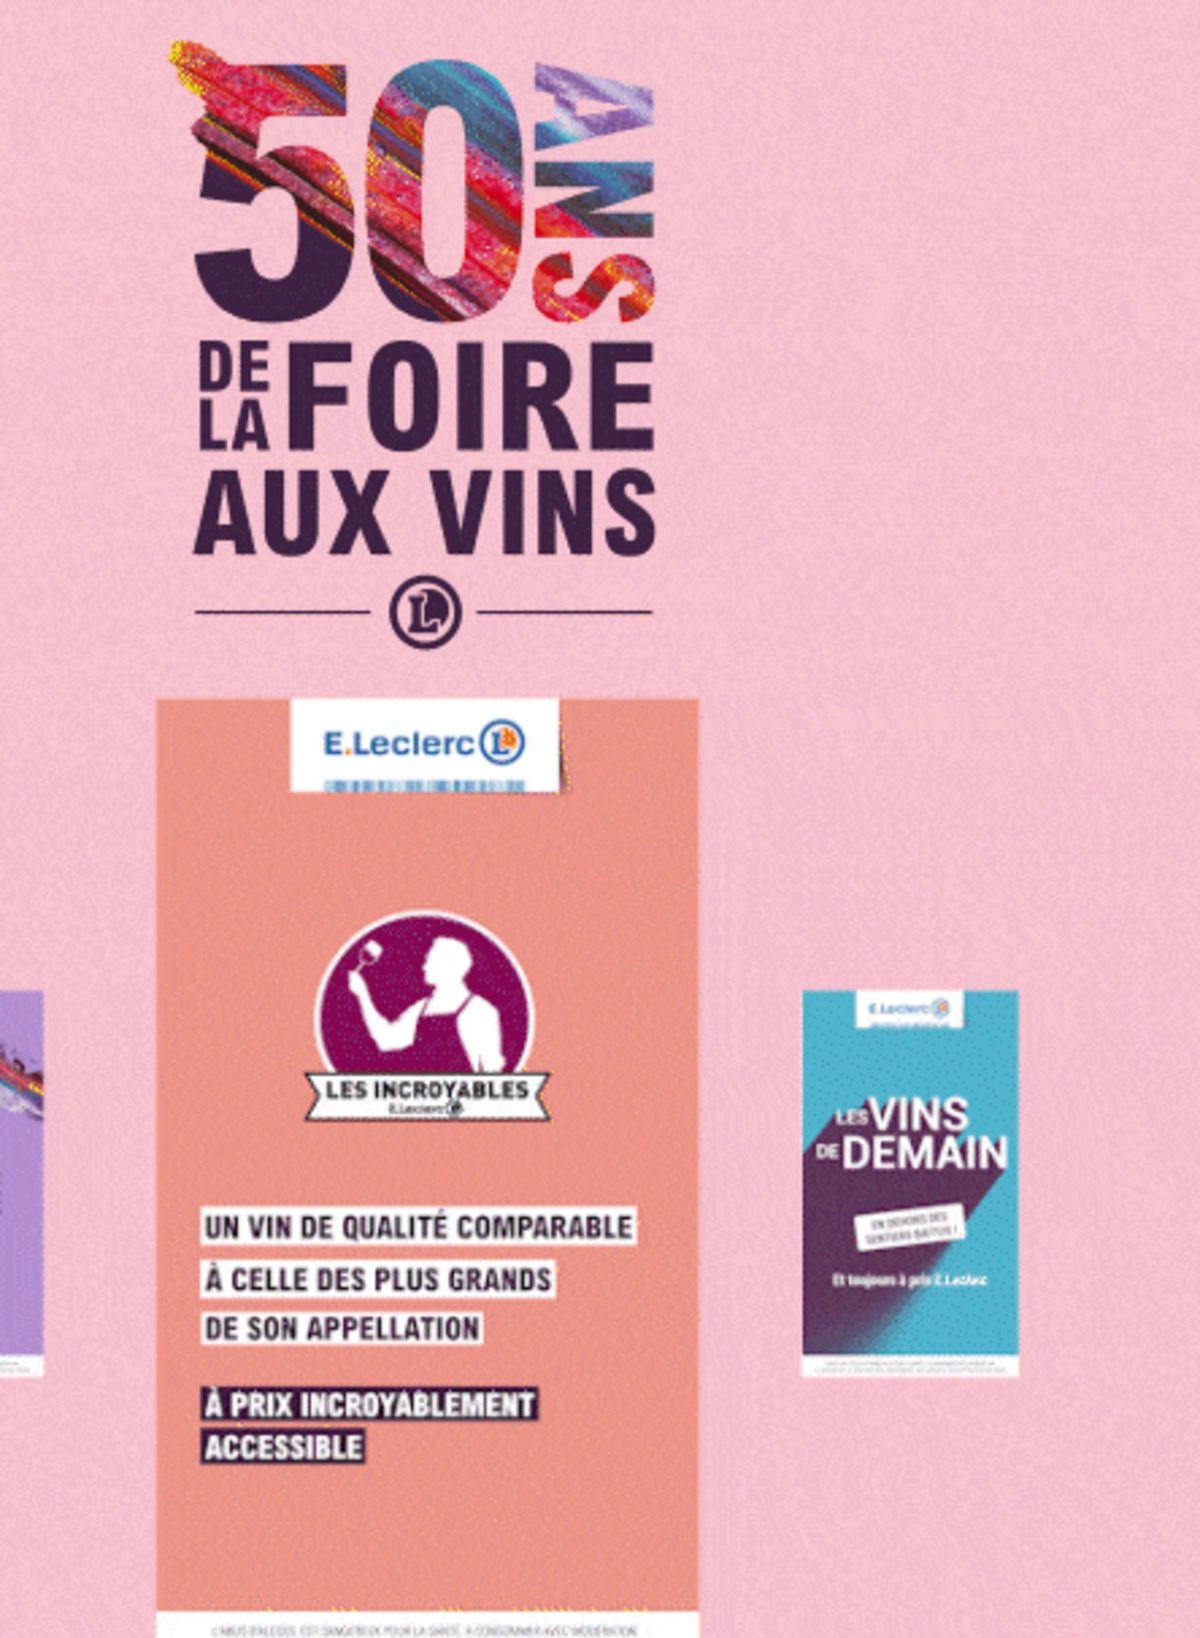 Catalogue Foire Aux Vins - Mixte, page 00668